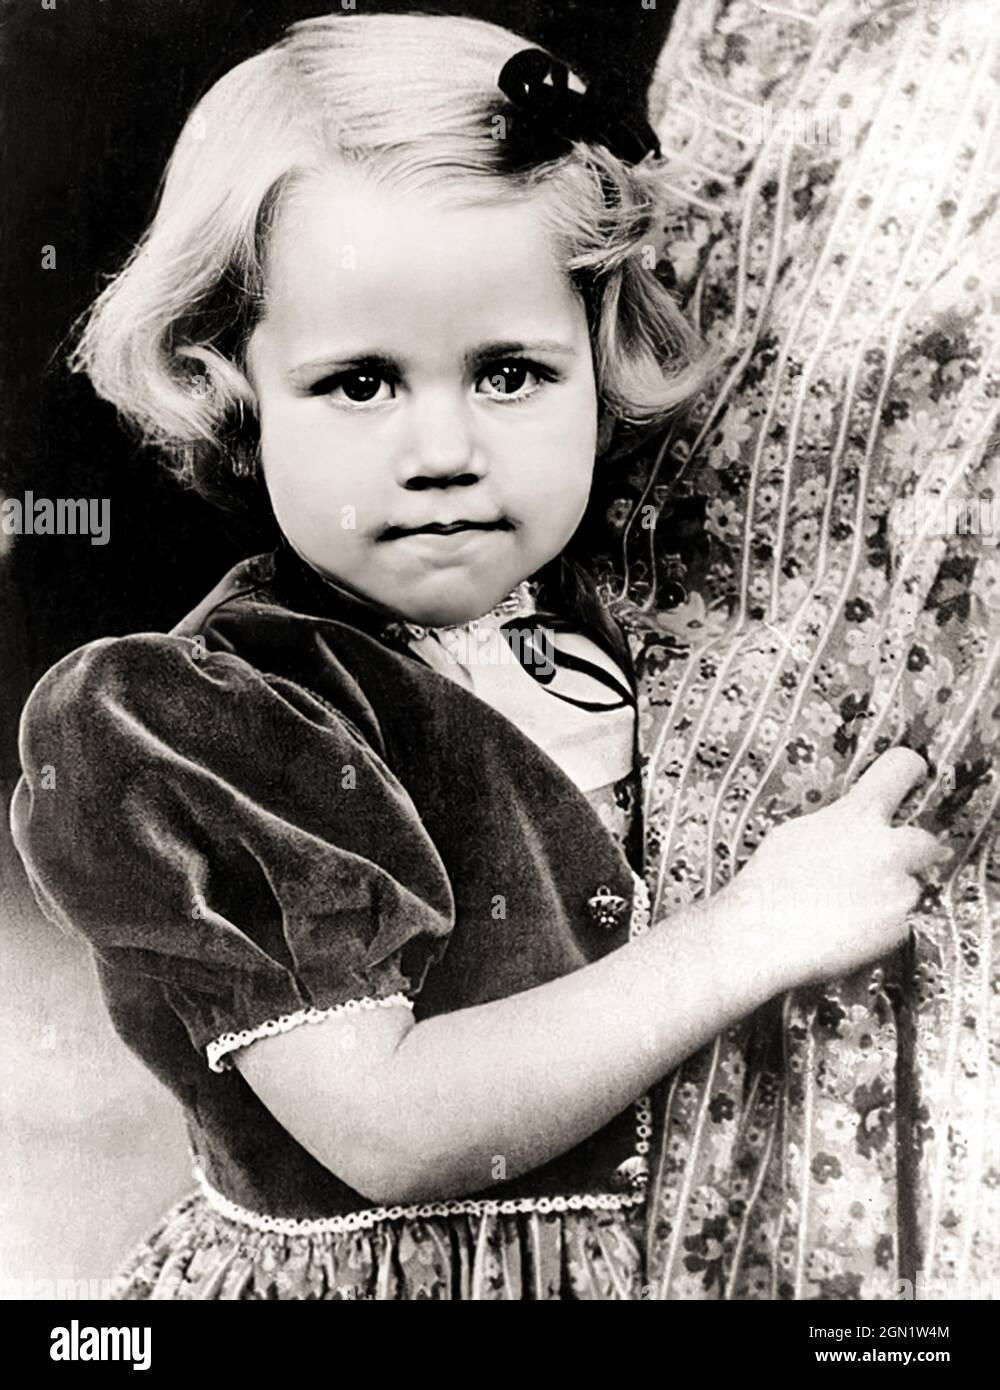 1941 c. , USA : die gefeierte amerikanische Schauspielerin JANE FONDA ( geboren 21. dezember 1938 ), als ein kleines Mädchen , im Alter von 3 . Tochter des Schauspielers Henry Fonda und Frances Seymour Brokaw. Unbekannter Fotograf .- GESCHICHTE - FOTO STORICHE - ATTORE - ATTRICE - FILM - KINO - personalità da giovane giovani - da bambina bambino bambini - Persönlichkeit Persönlichkeiten, als jung war - KINDHEIT - INFANZIA - KIND - KINDER --- ARCHIVIO GBB Stockfoto